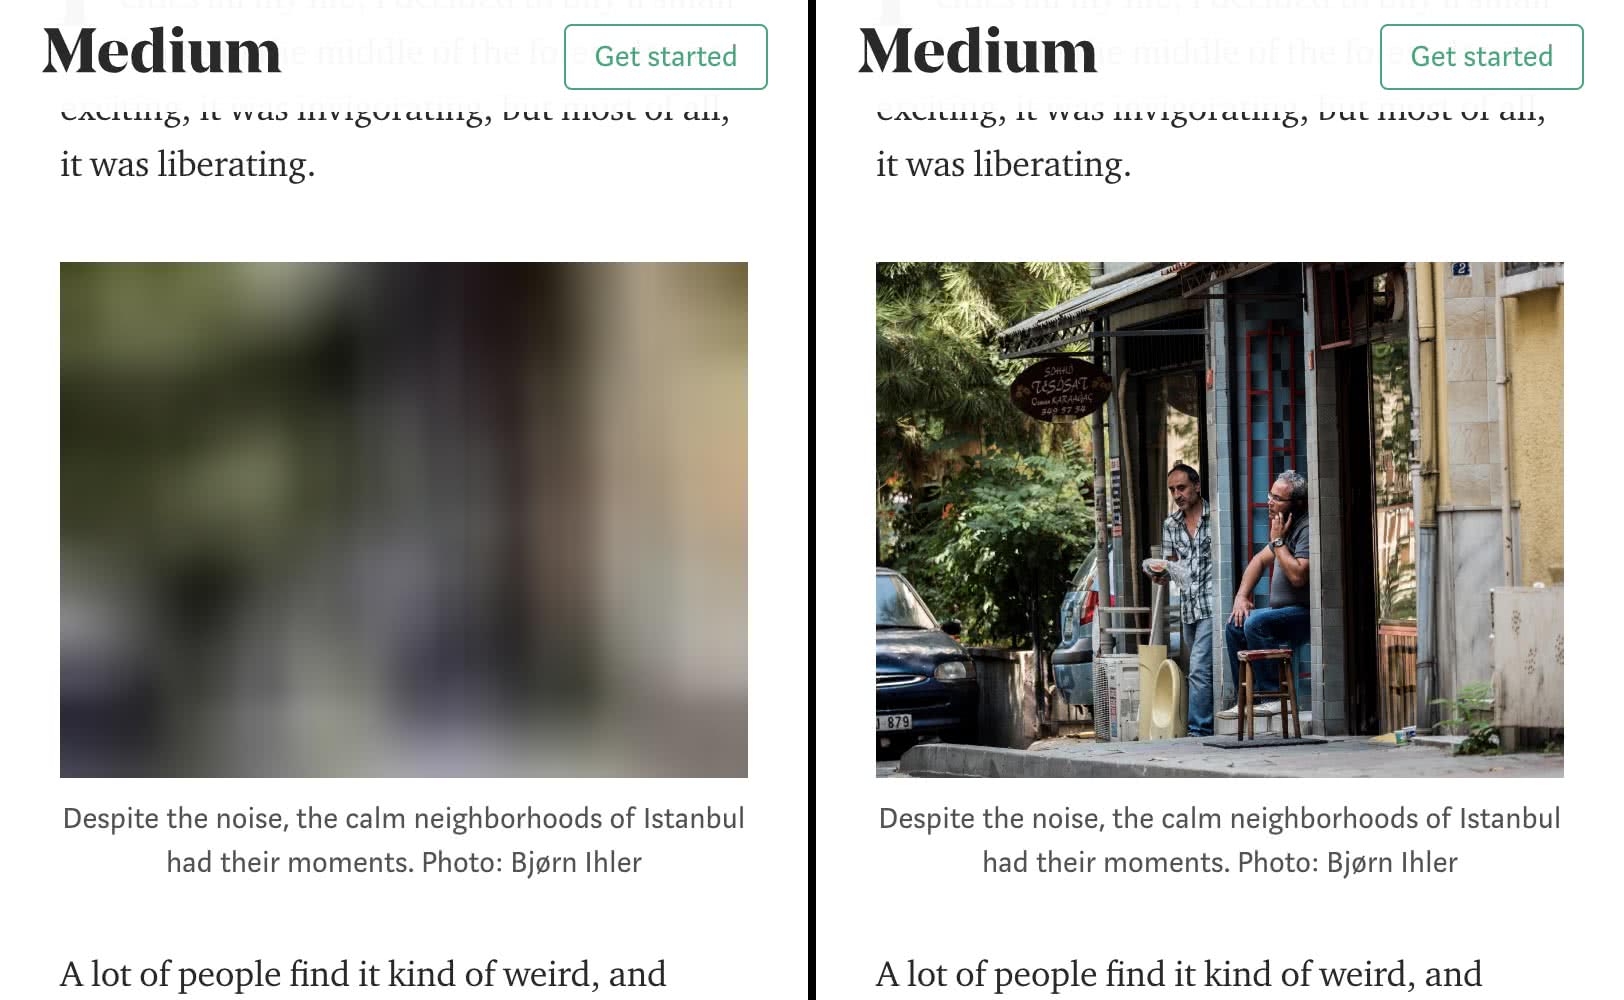 Zrzut ekranu strony Medium podczas przeglądania, przedstawiający działanie leniwego ładowania. Rozmyty obiekt zastępczy jest po lewej stronie, a załadowany zasób – po prawej.